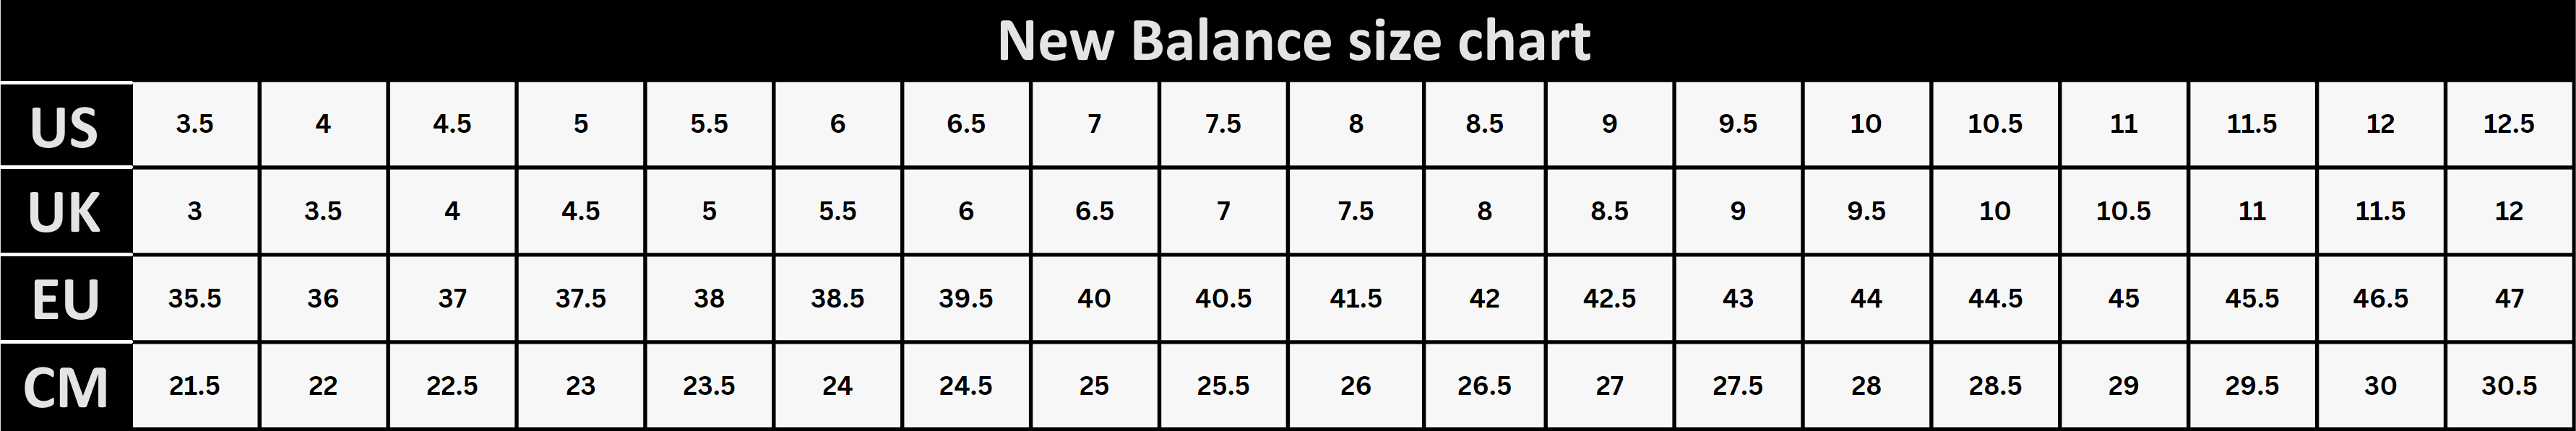 newbalance size chart